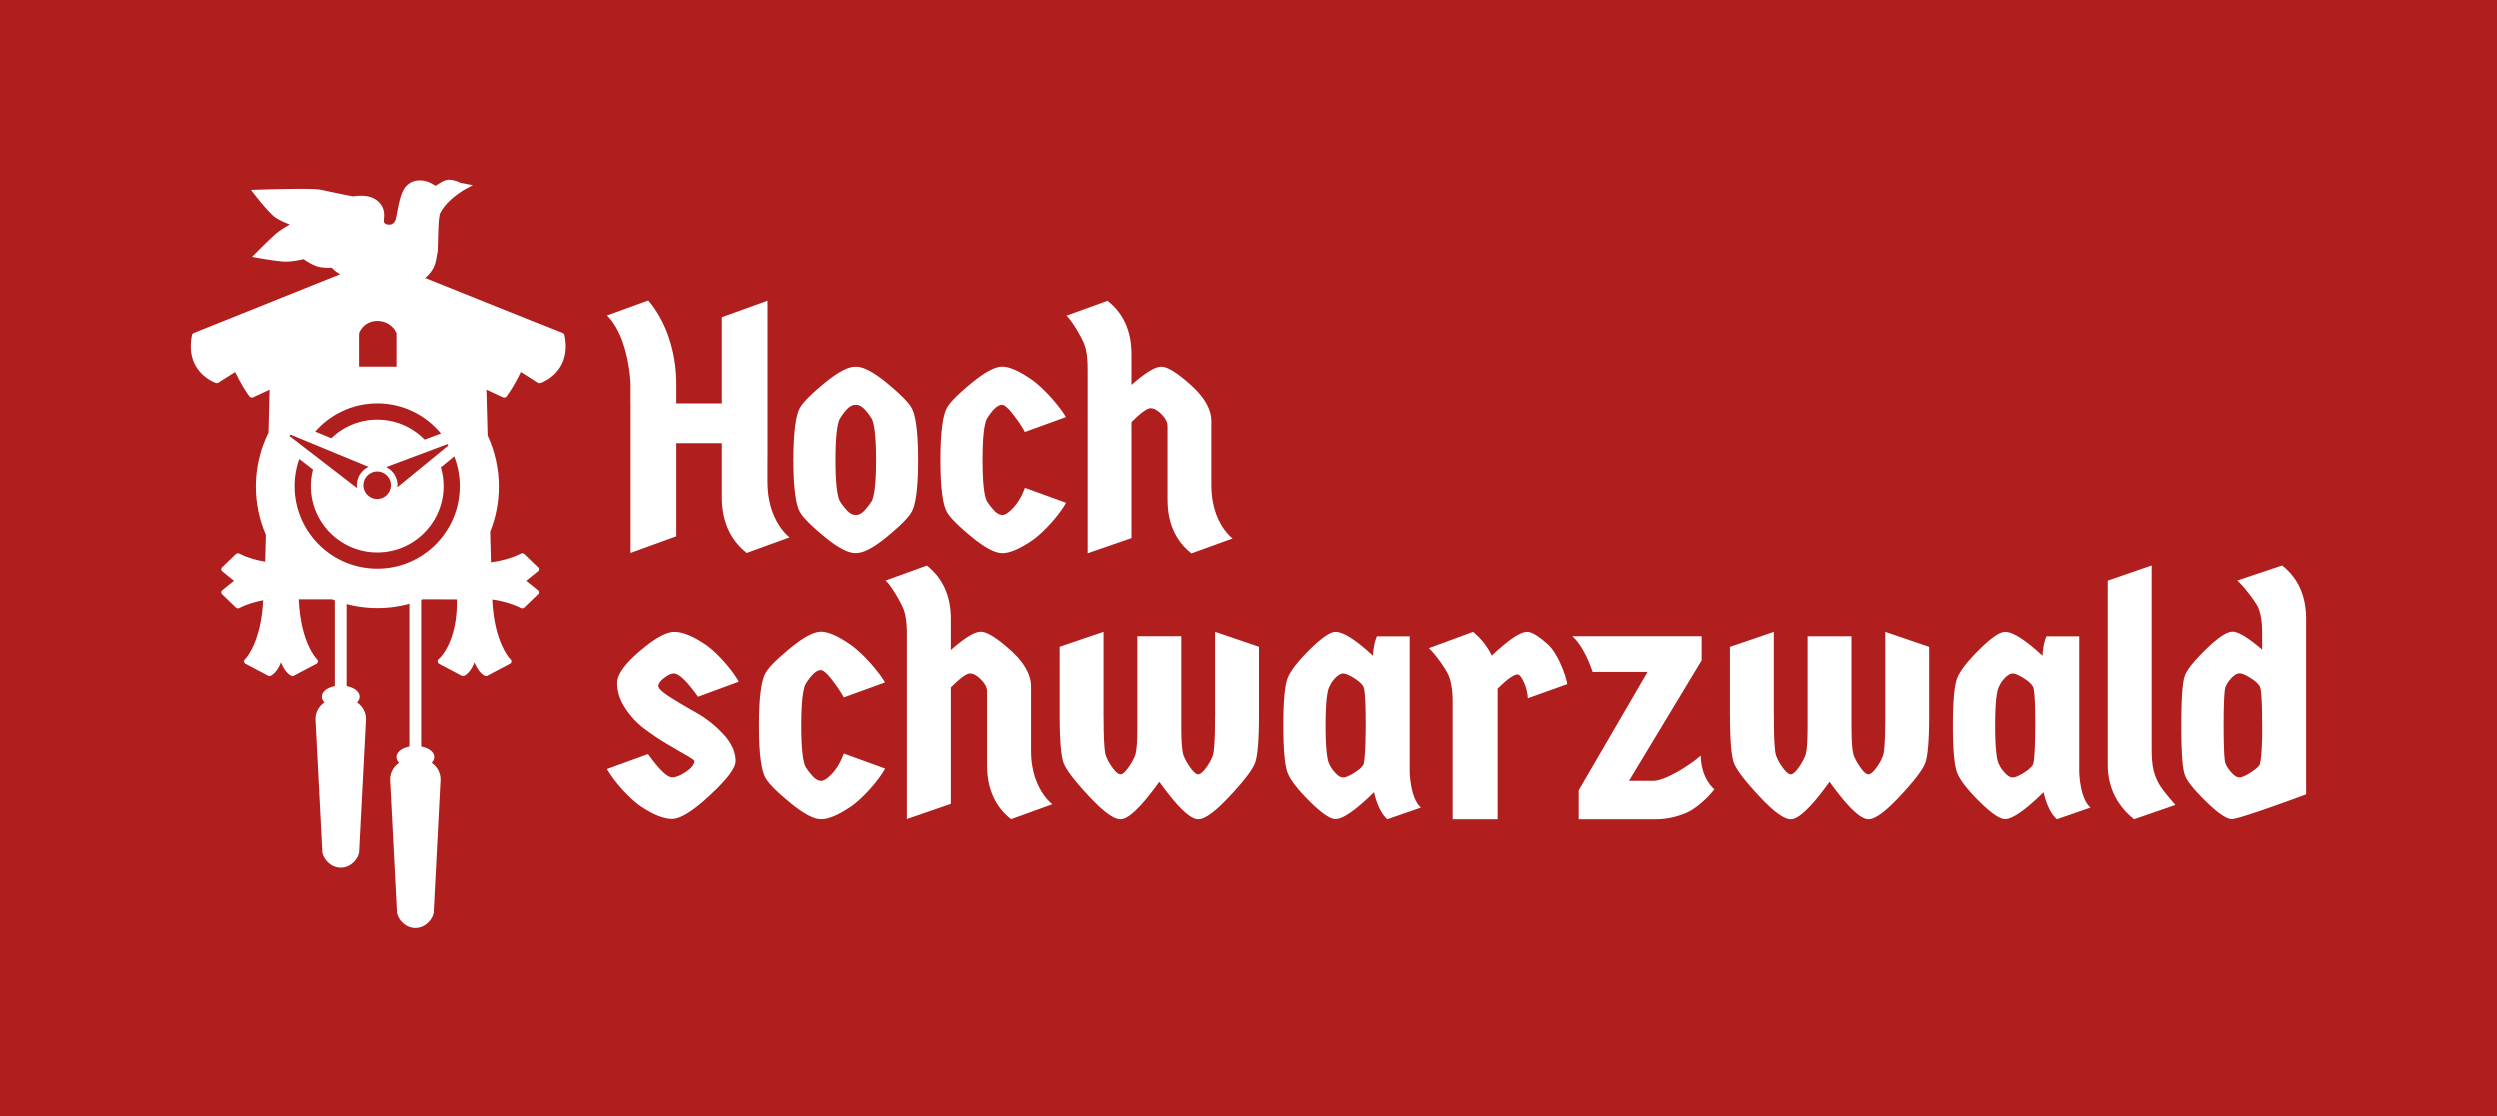 Hochschwarzwald Partnerlogo cmyk